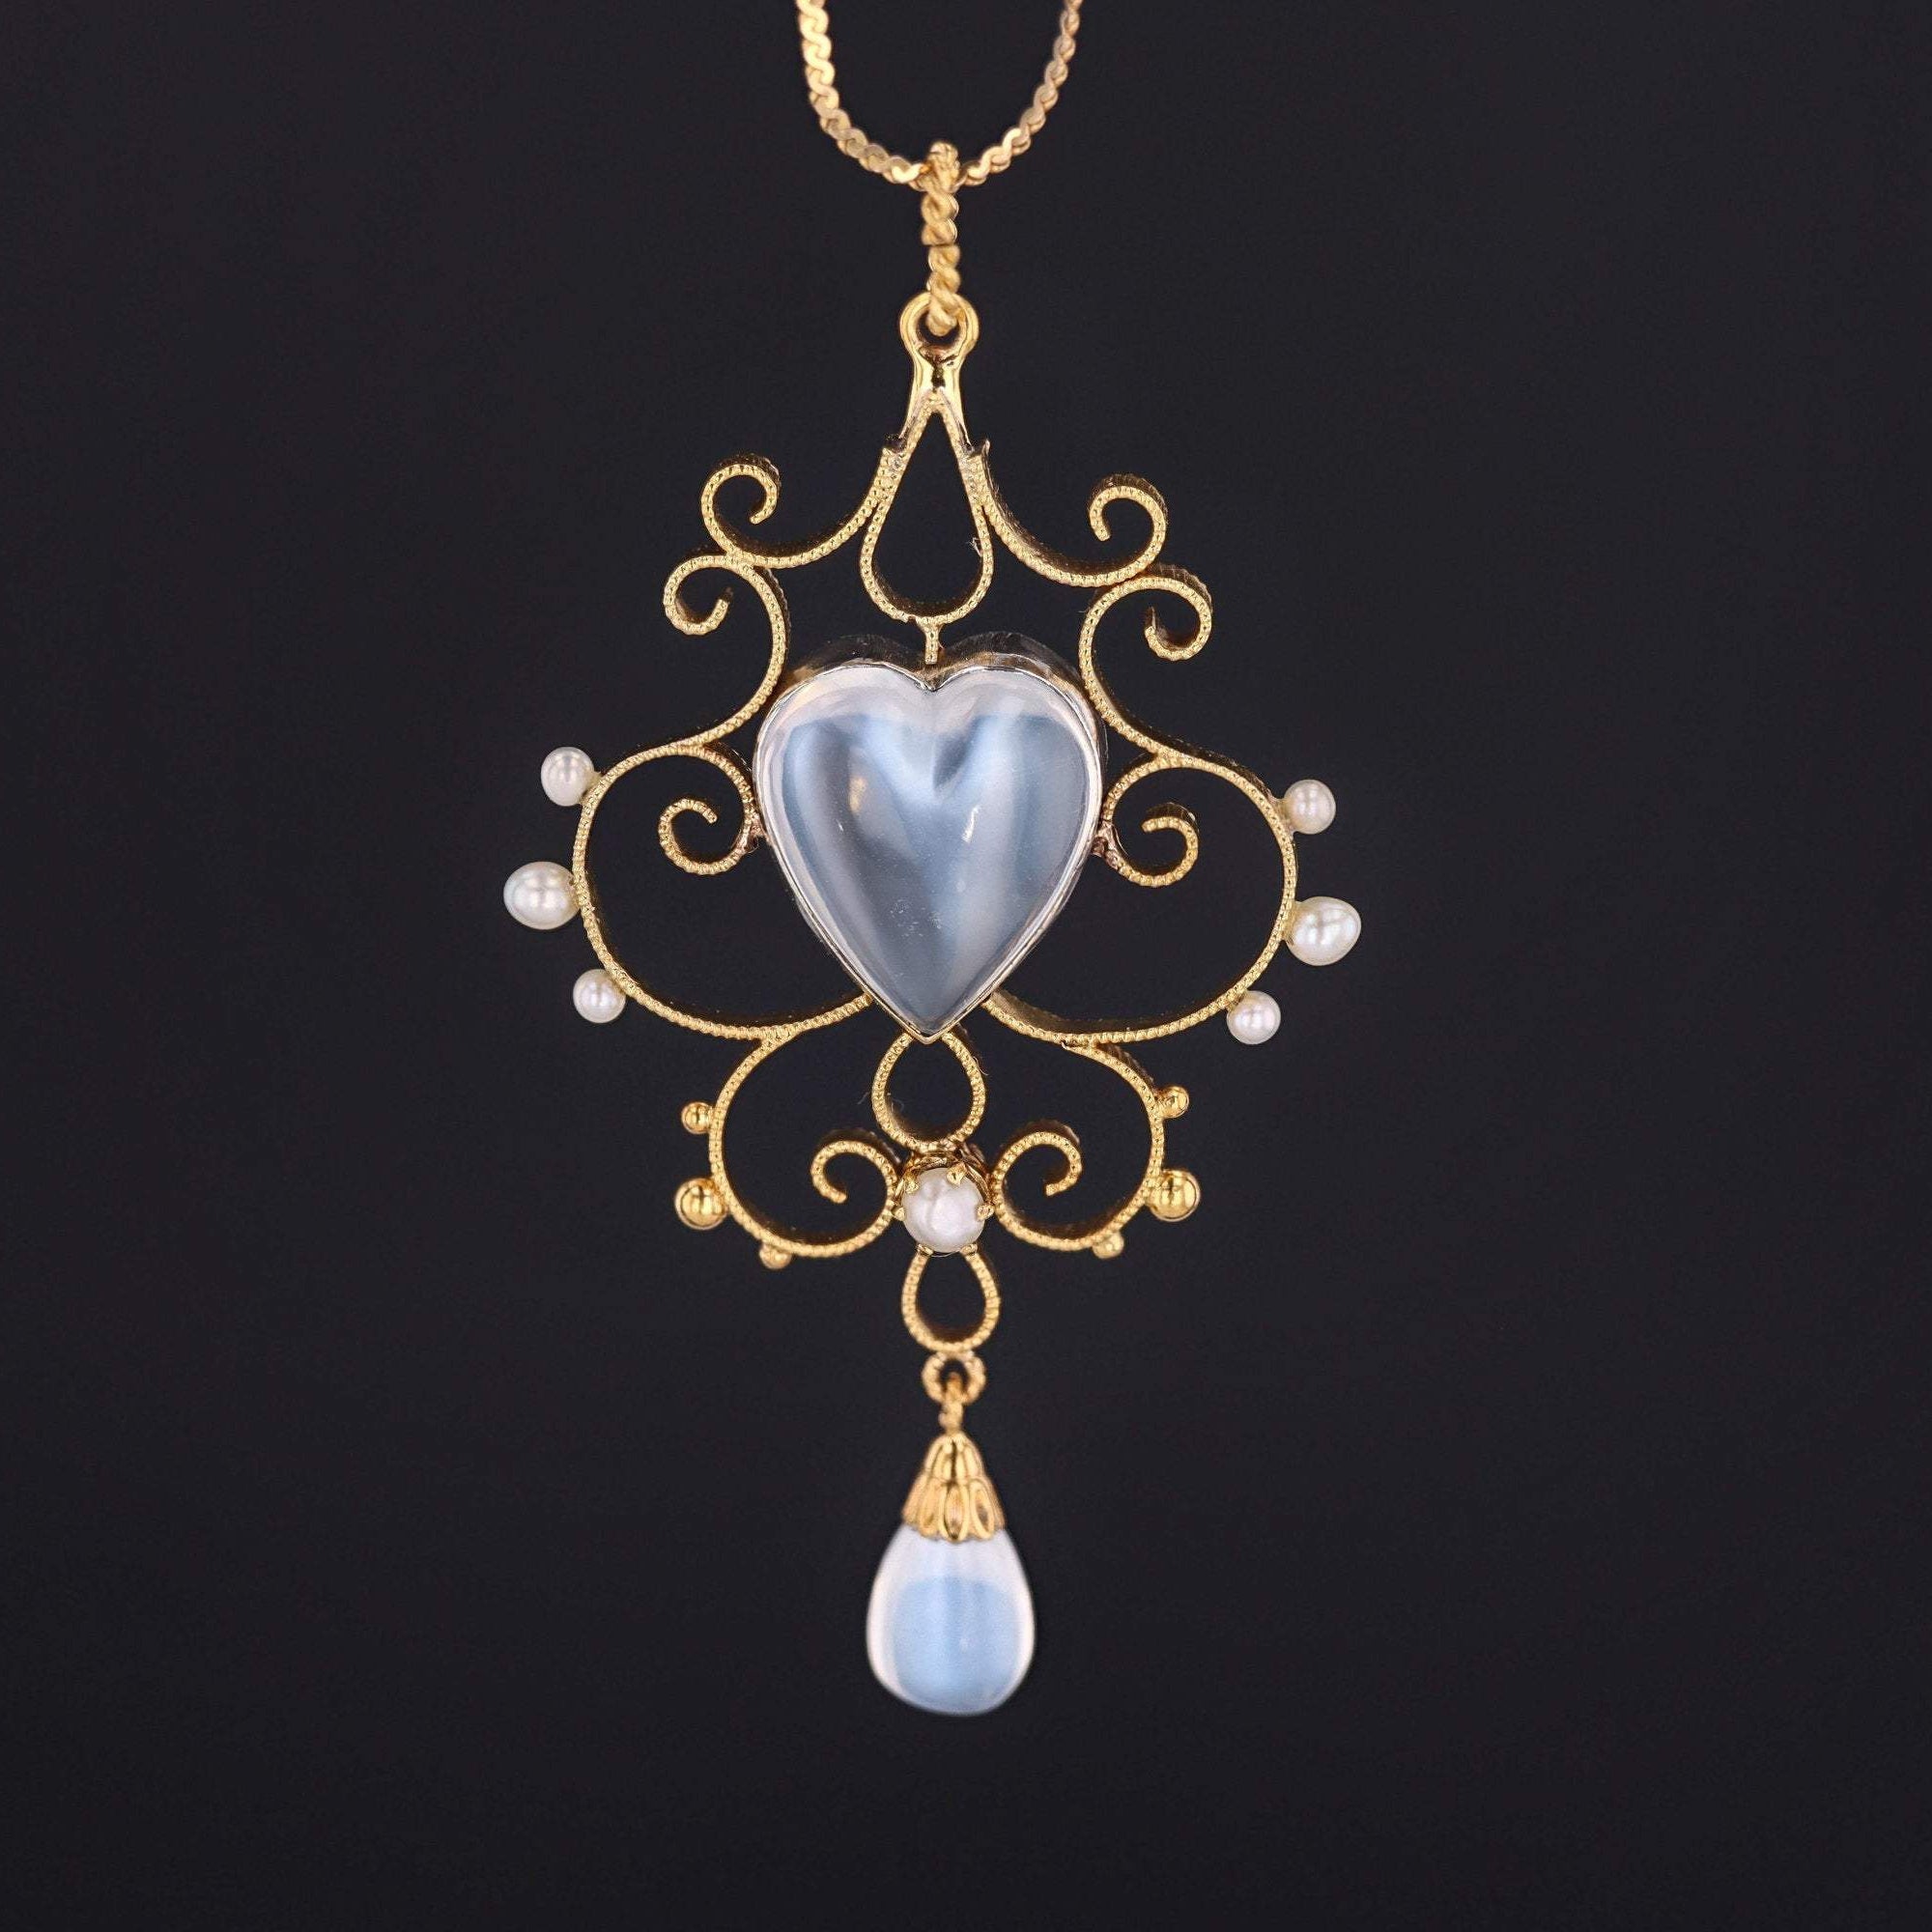 Moonstone Heart Pendant | 14k Gold Pendant on Optional 14k Chain 